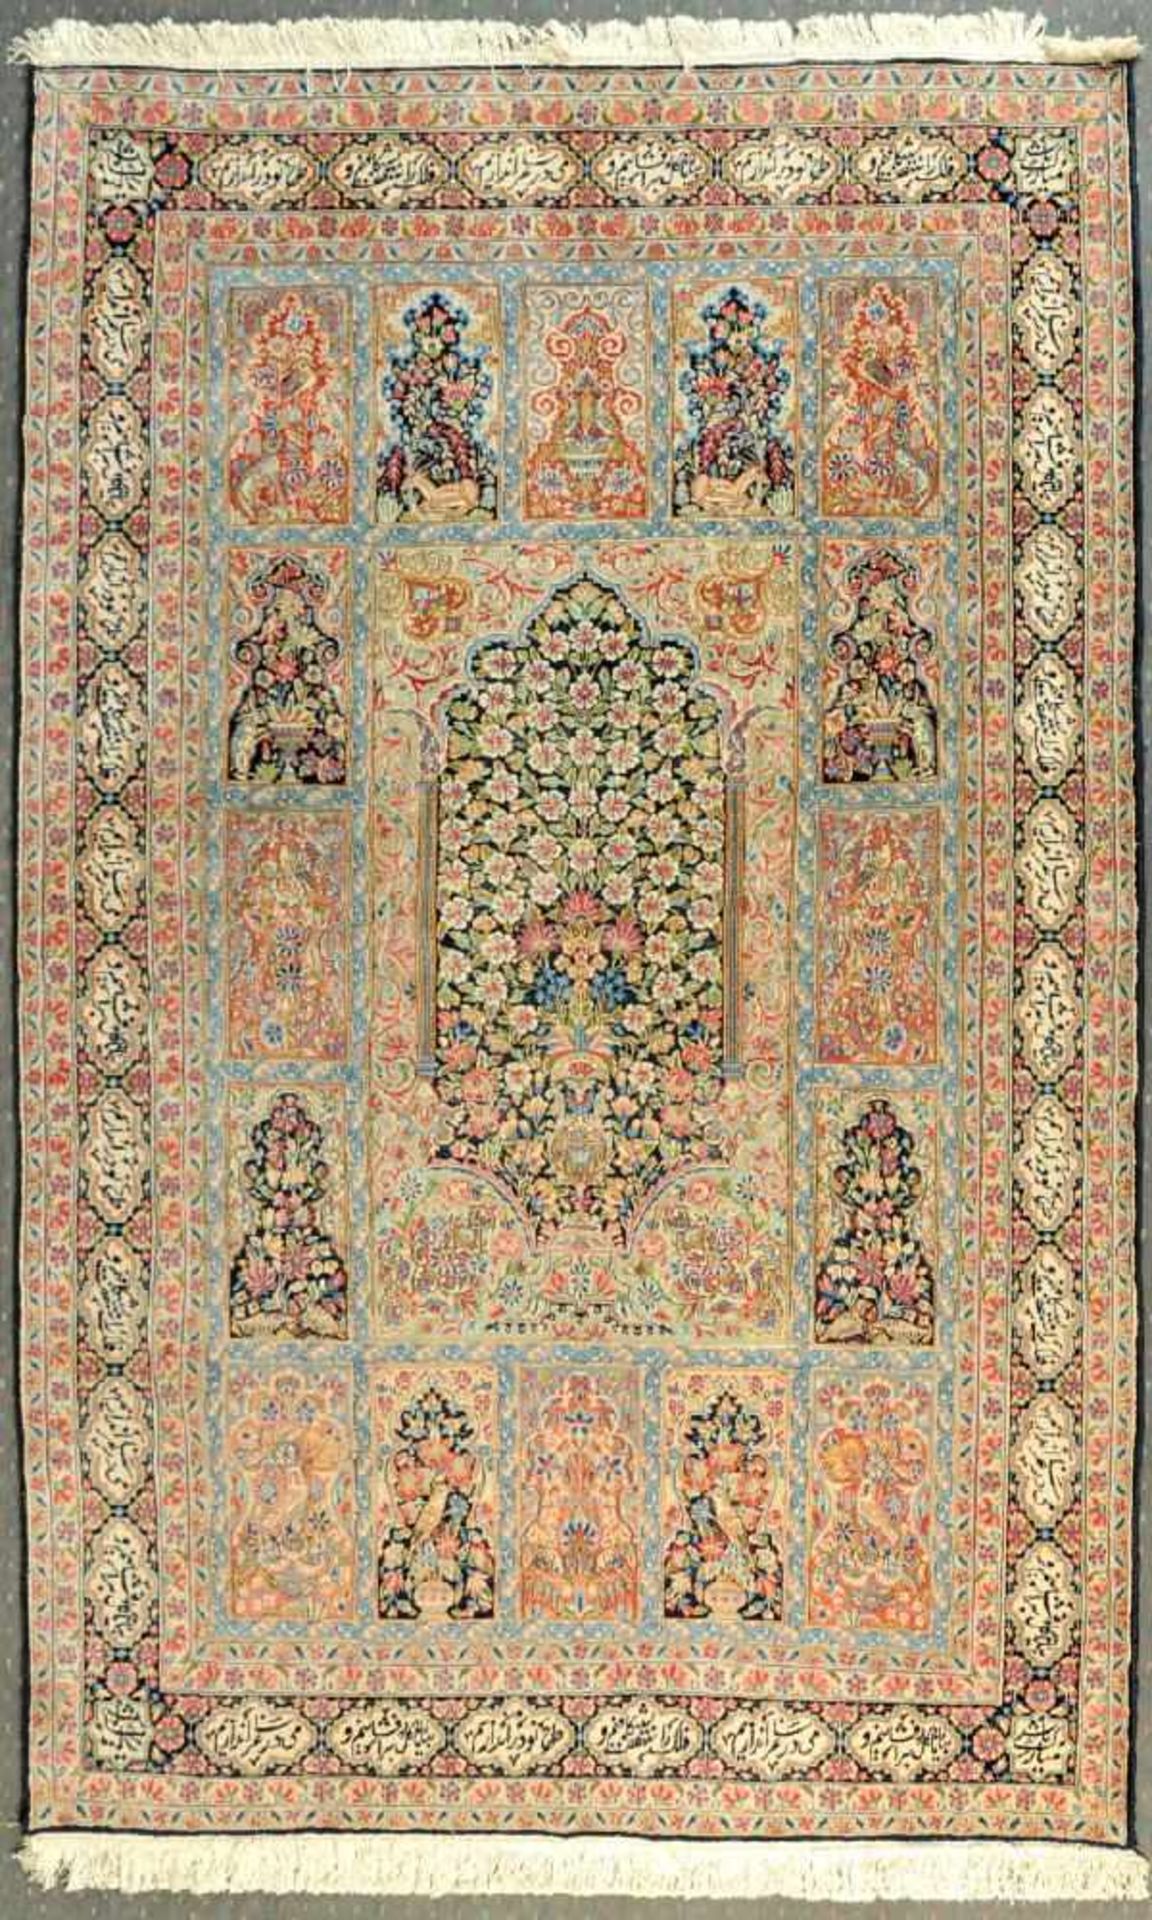 Felder-Gebets-Kirman, Persien, 185 x 291 cmWolle, mittig großer Gebetsgiebel, umgeben von kleinen